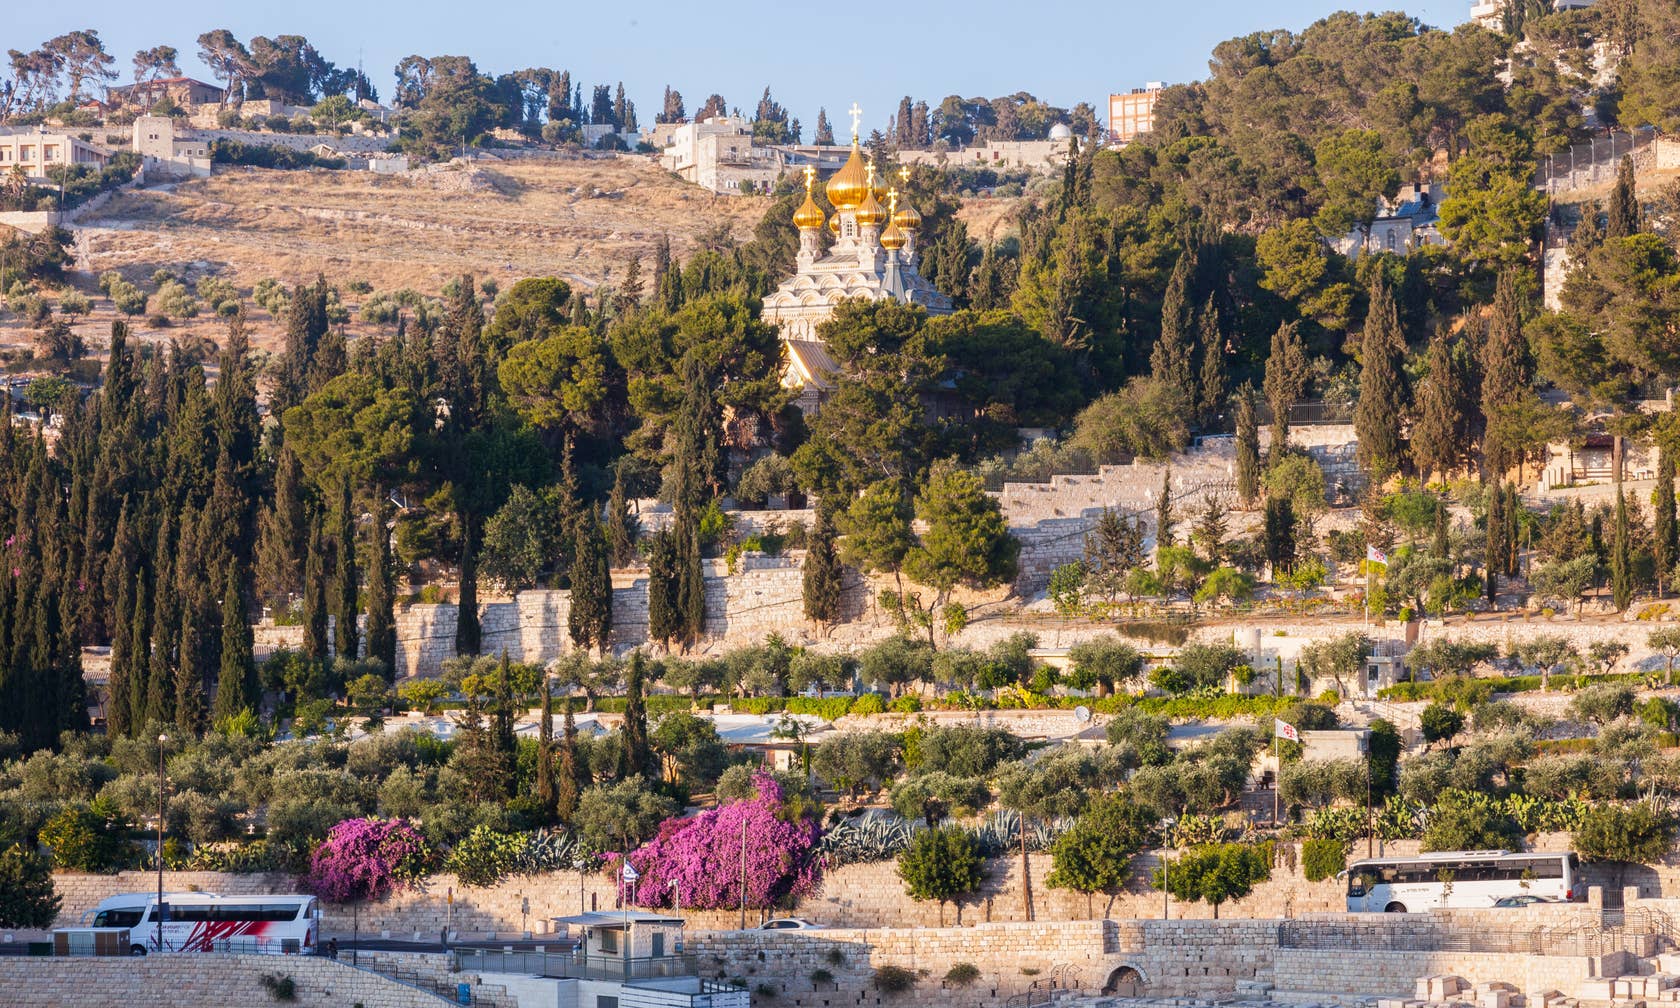 Bérbeadó nyaralók itt: Jeruzsálem